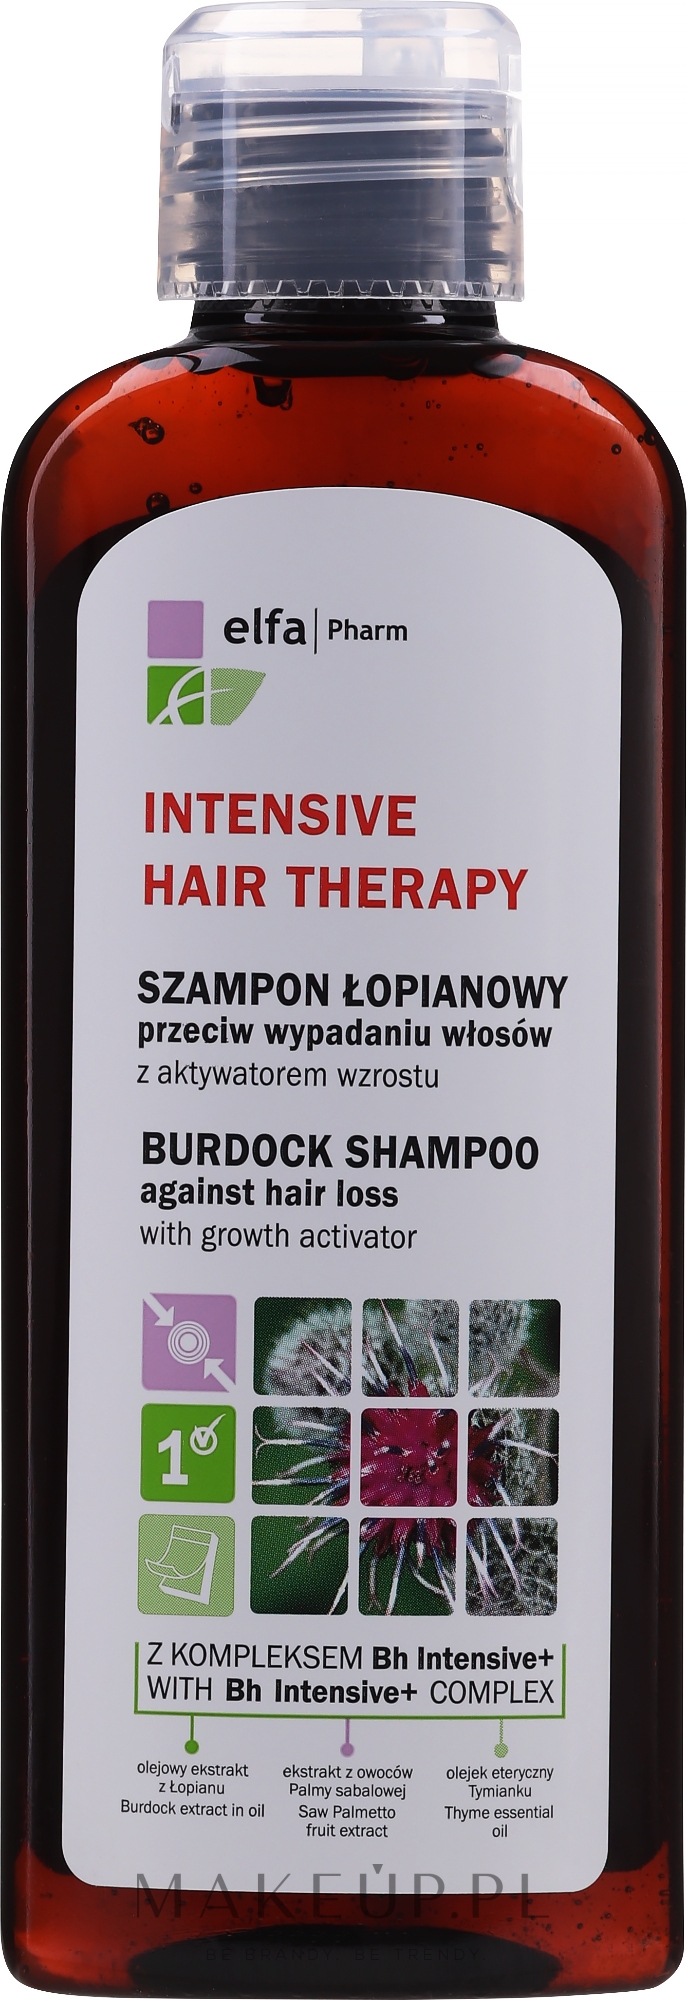 szampon łopianowy przeciw wypadaniu włosów elfa